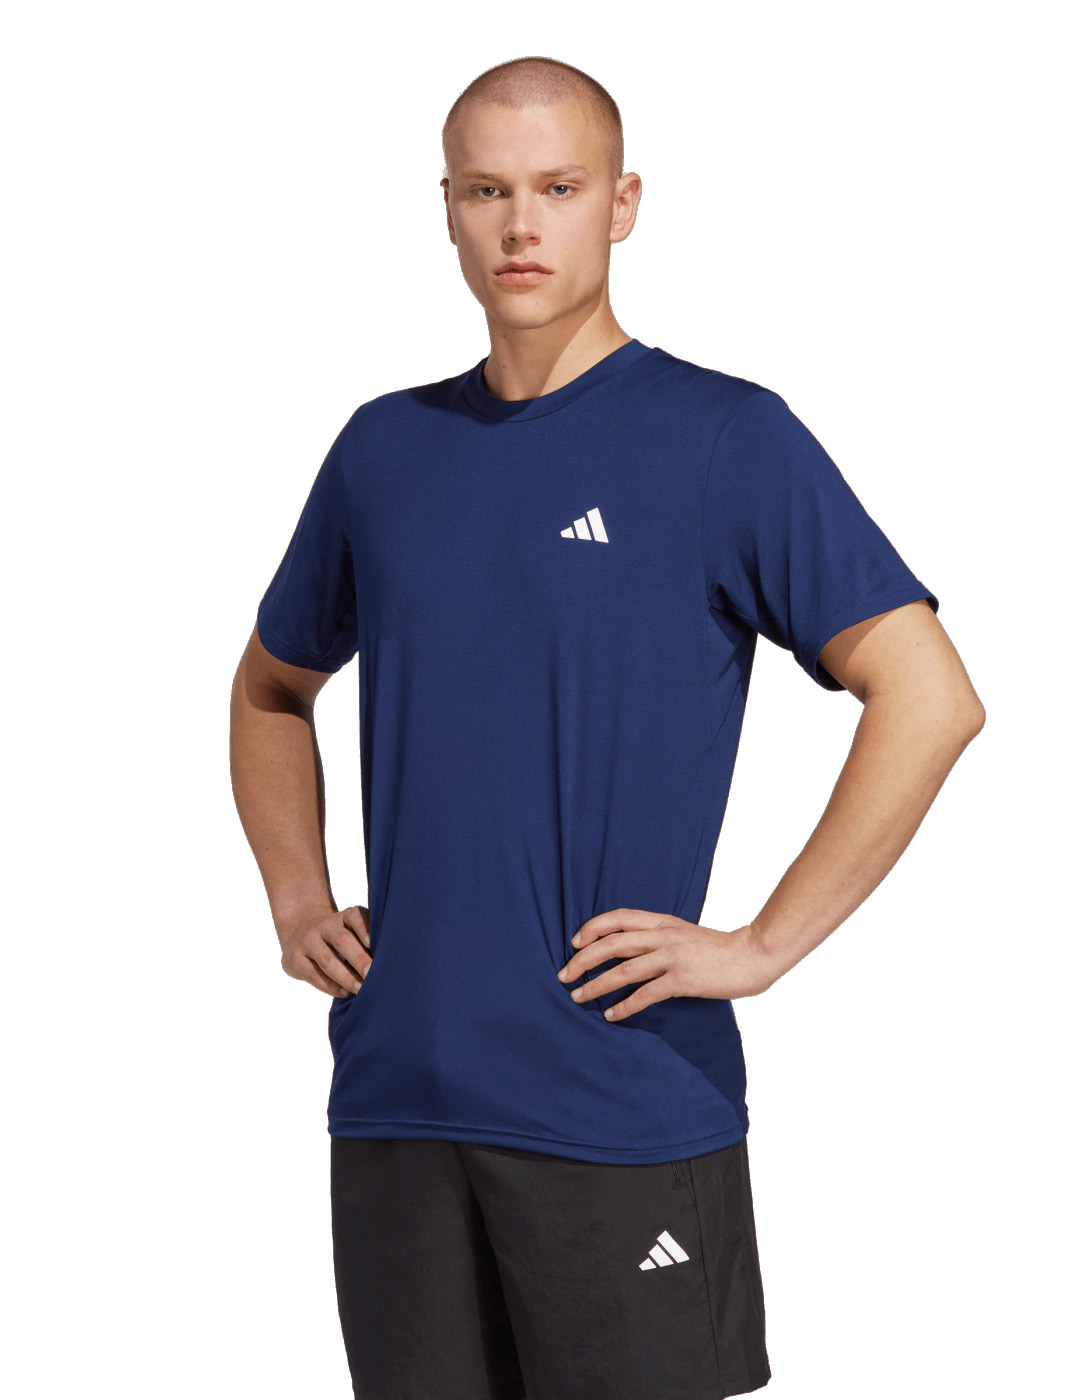 Camisetas técnicas para deporte para hombre